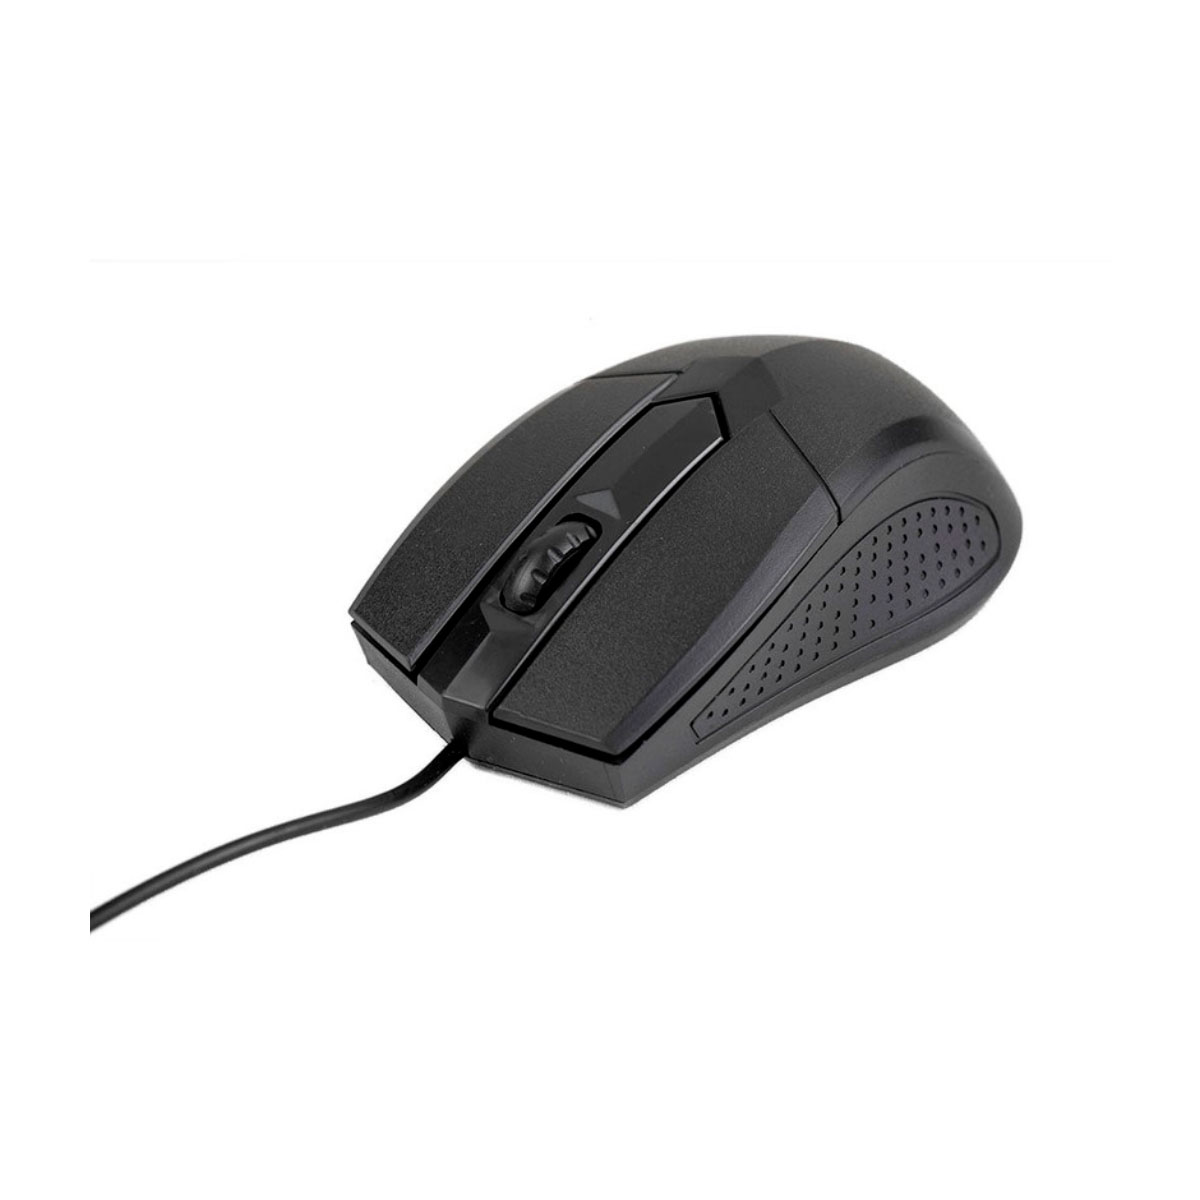 Mouse USB Kross Classico KE-M108 - 1200dpi